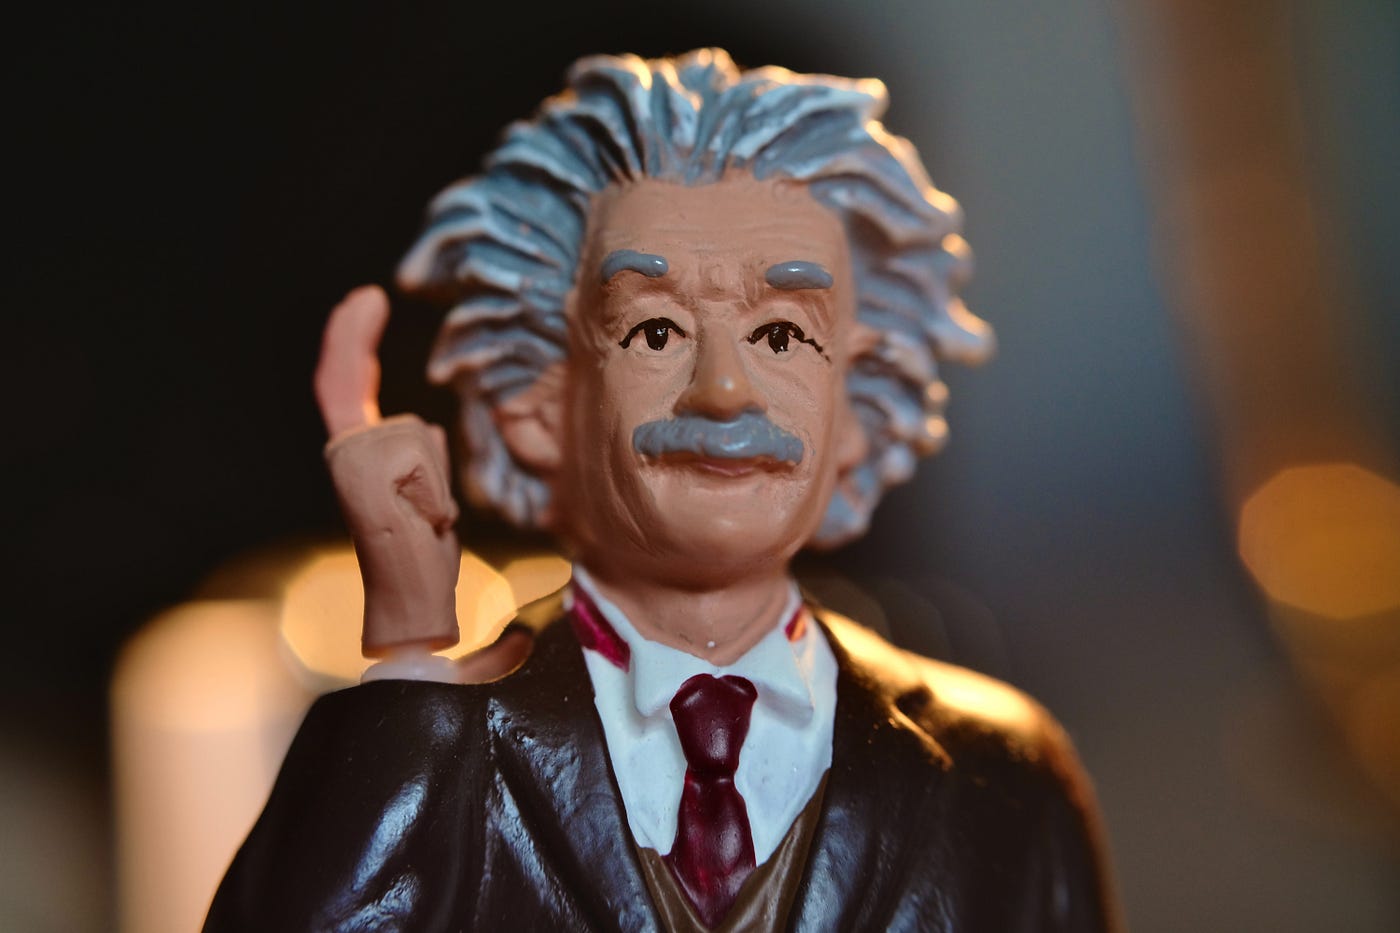 An Albert Einstein figurine